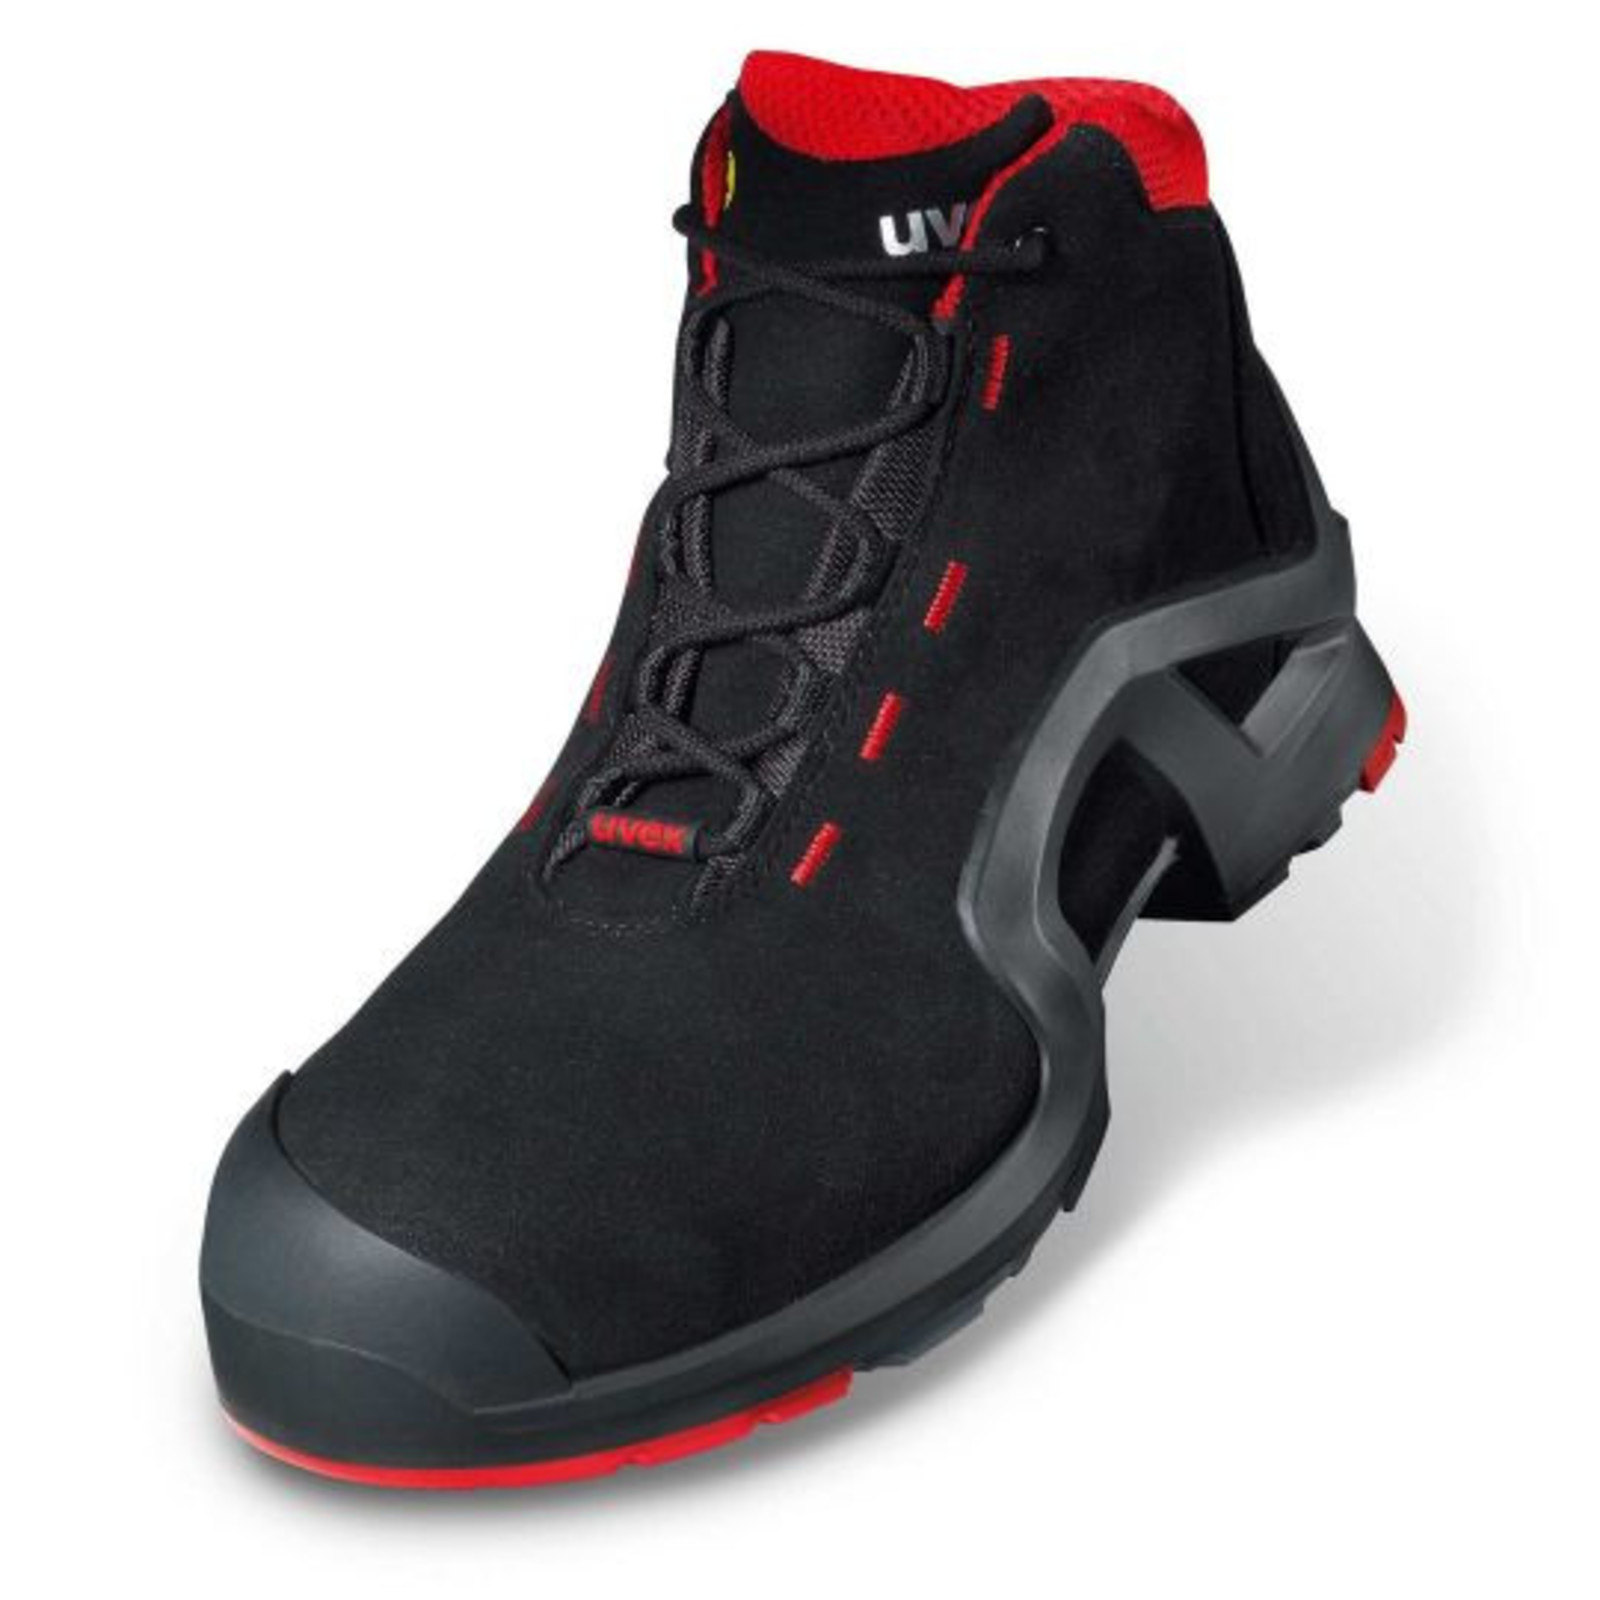 Vysoká bezpečnostná obuv Uvex 1 x-tended support S3 85172 - veľkosť: 50, farba: čierna/červená